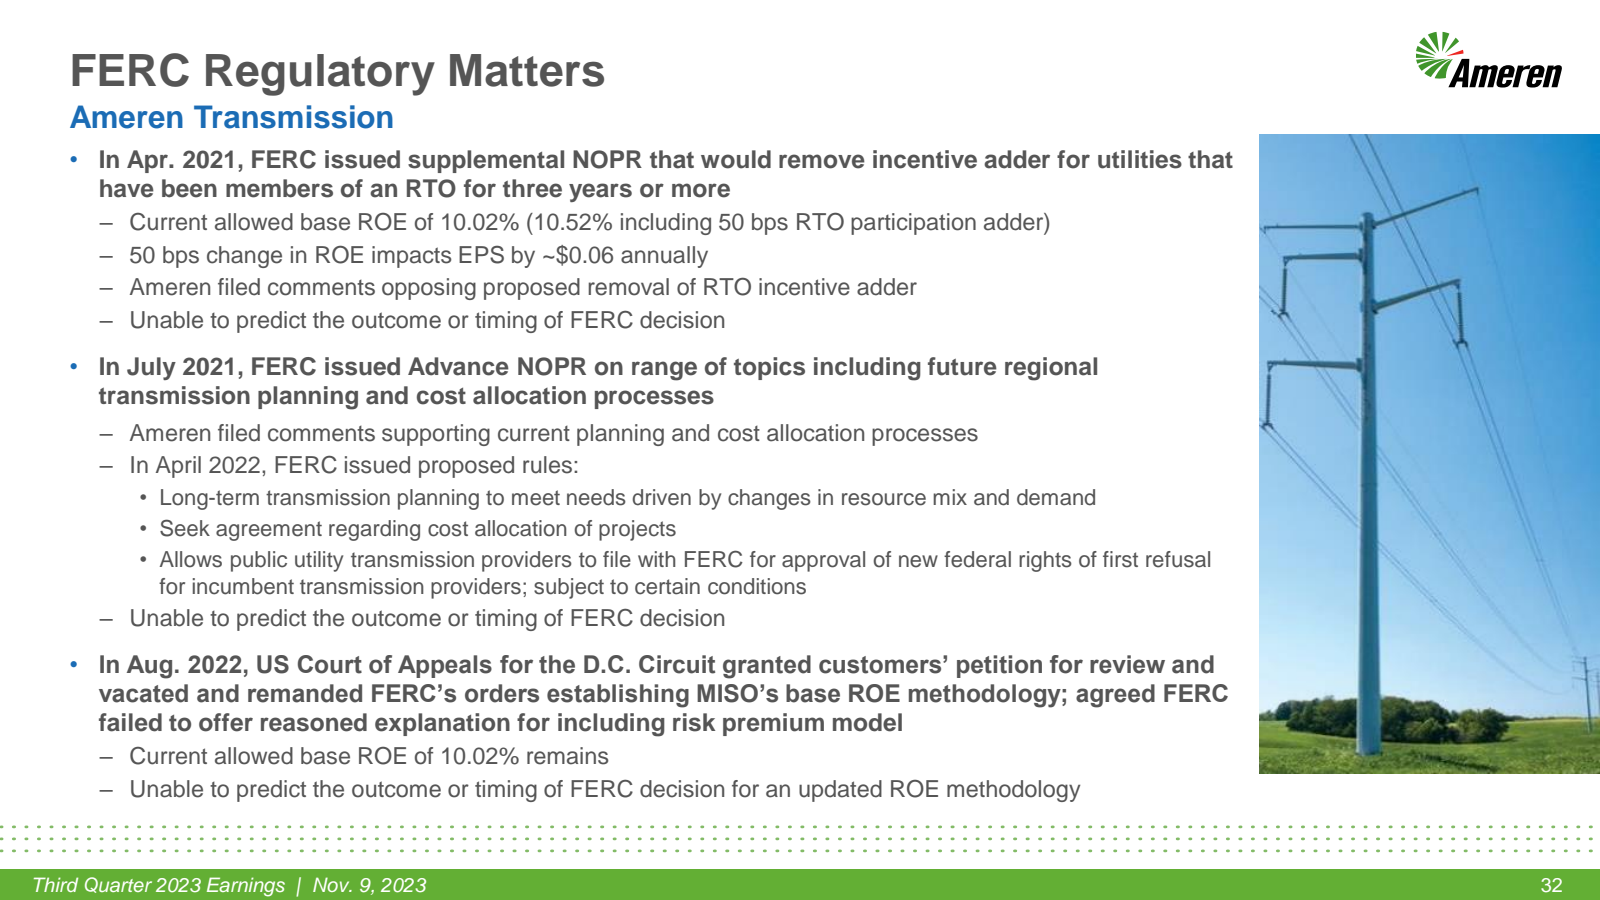 FERC Regulatory Matt